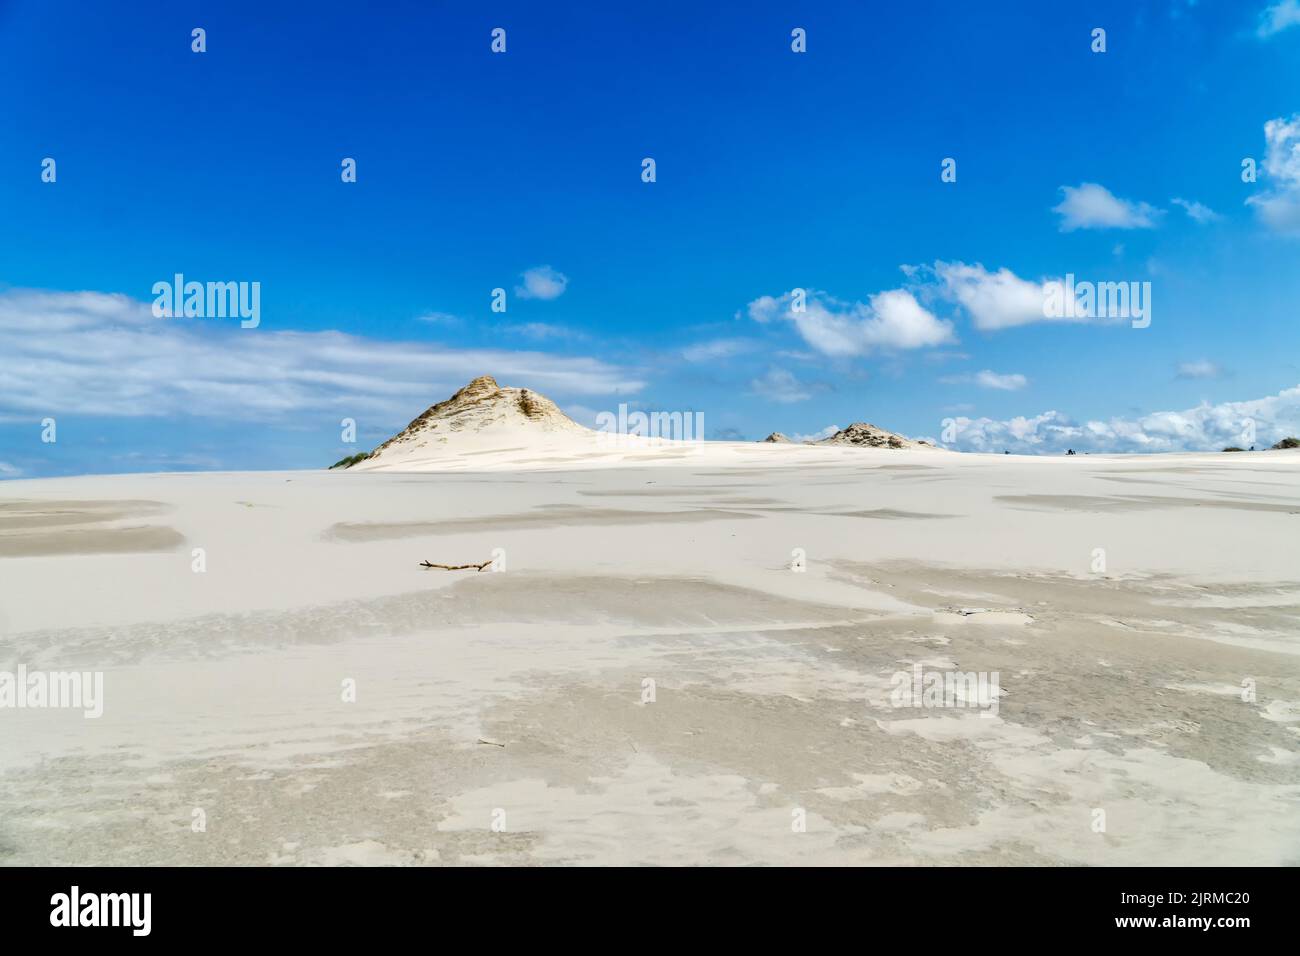 Lacka-Düne im Slowinski-Nationalpark in Polen, ein Wunder der Natur. Wanderdüne an sonnigen Sommertagen. Sandstrand und blauer Himmel mit weißen Wolken. Stockfoto